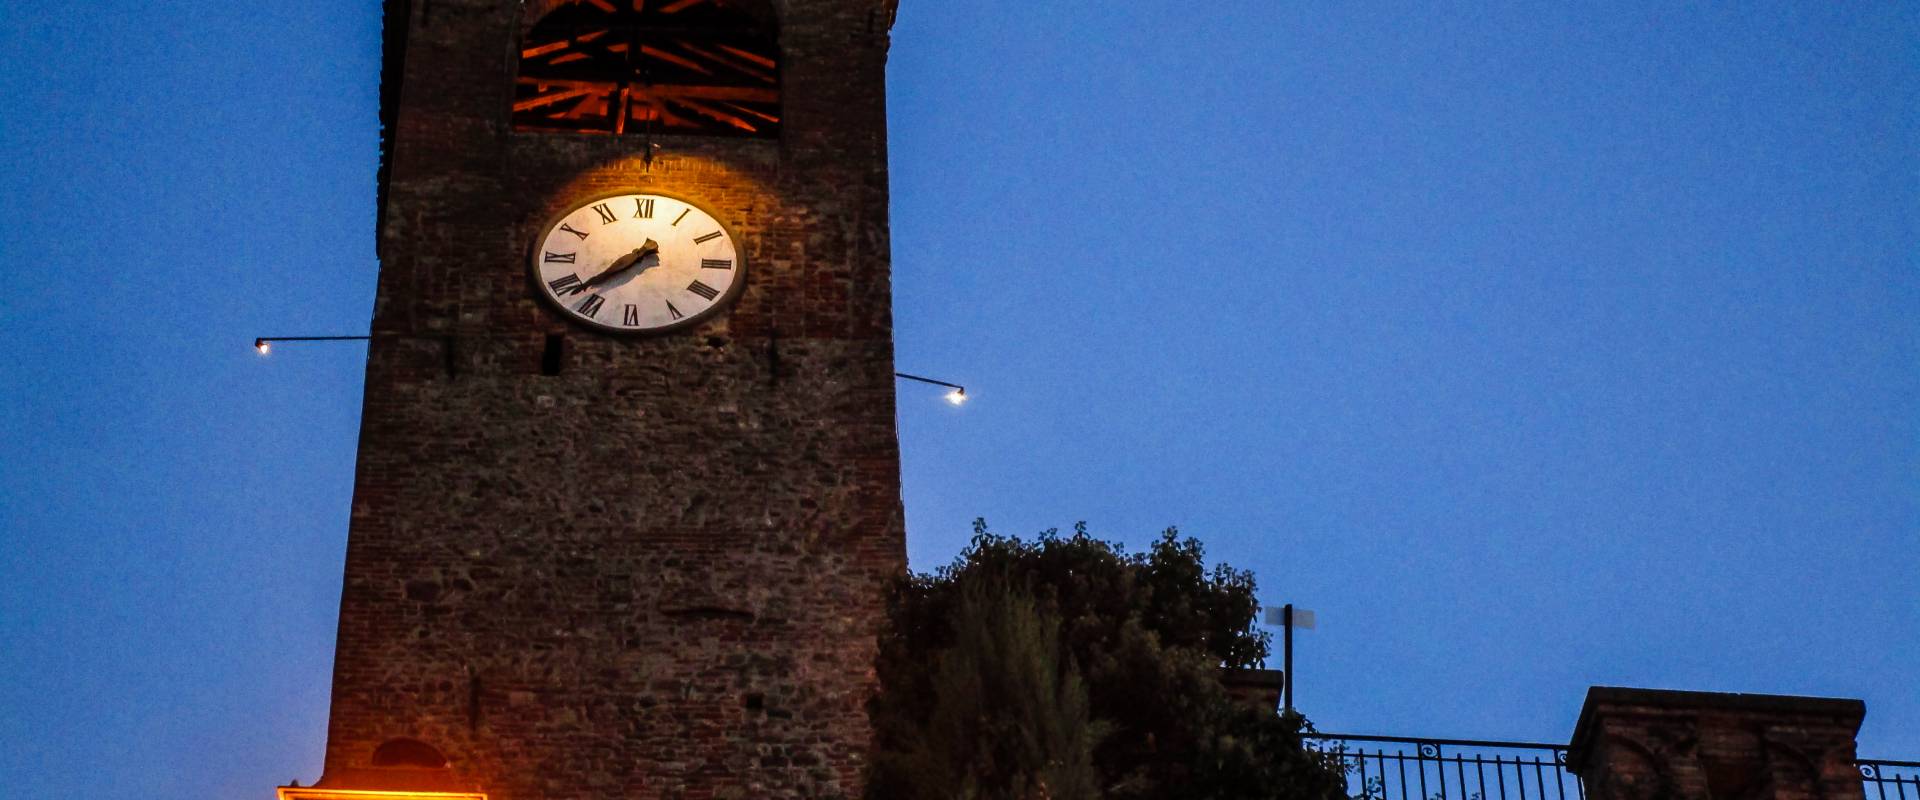 La Torre dell'Orologio di sera photo by LucaNacchio